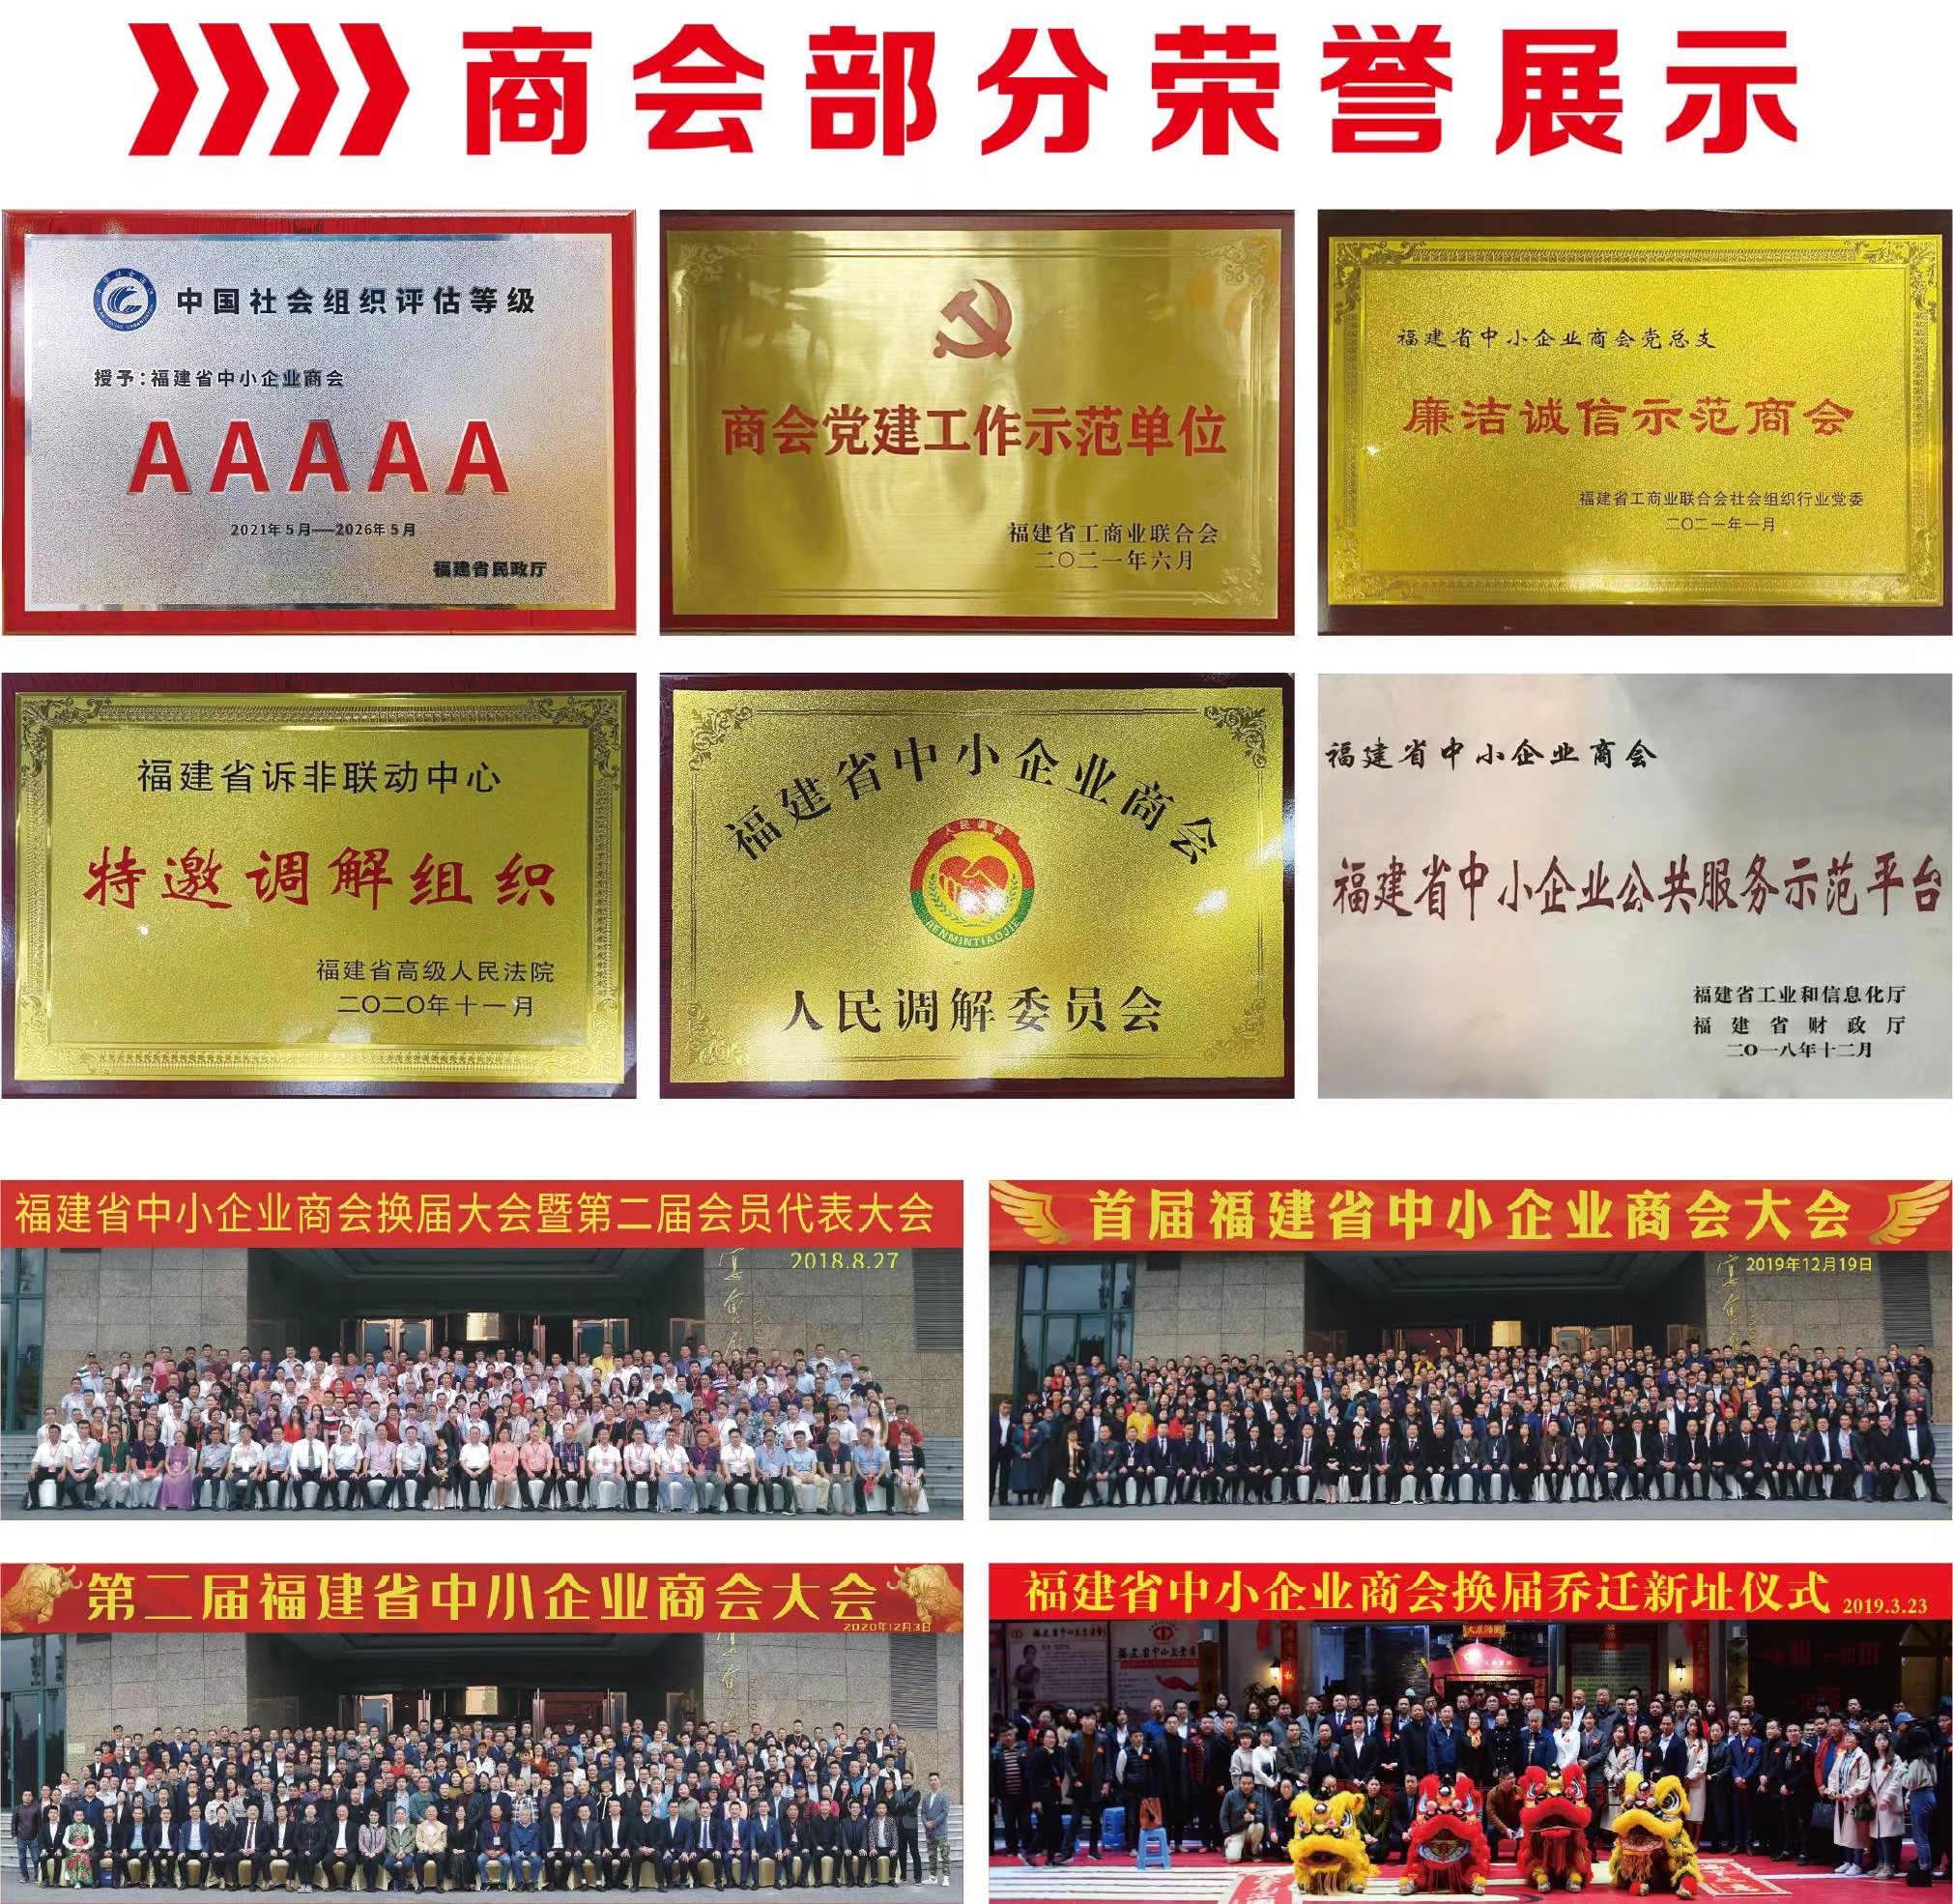 福建省中小企业商会部分荣誉及活动展示